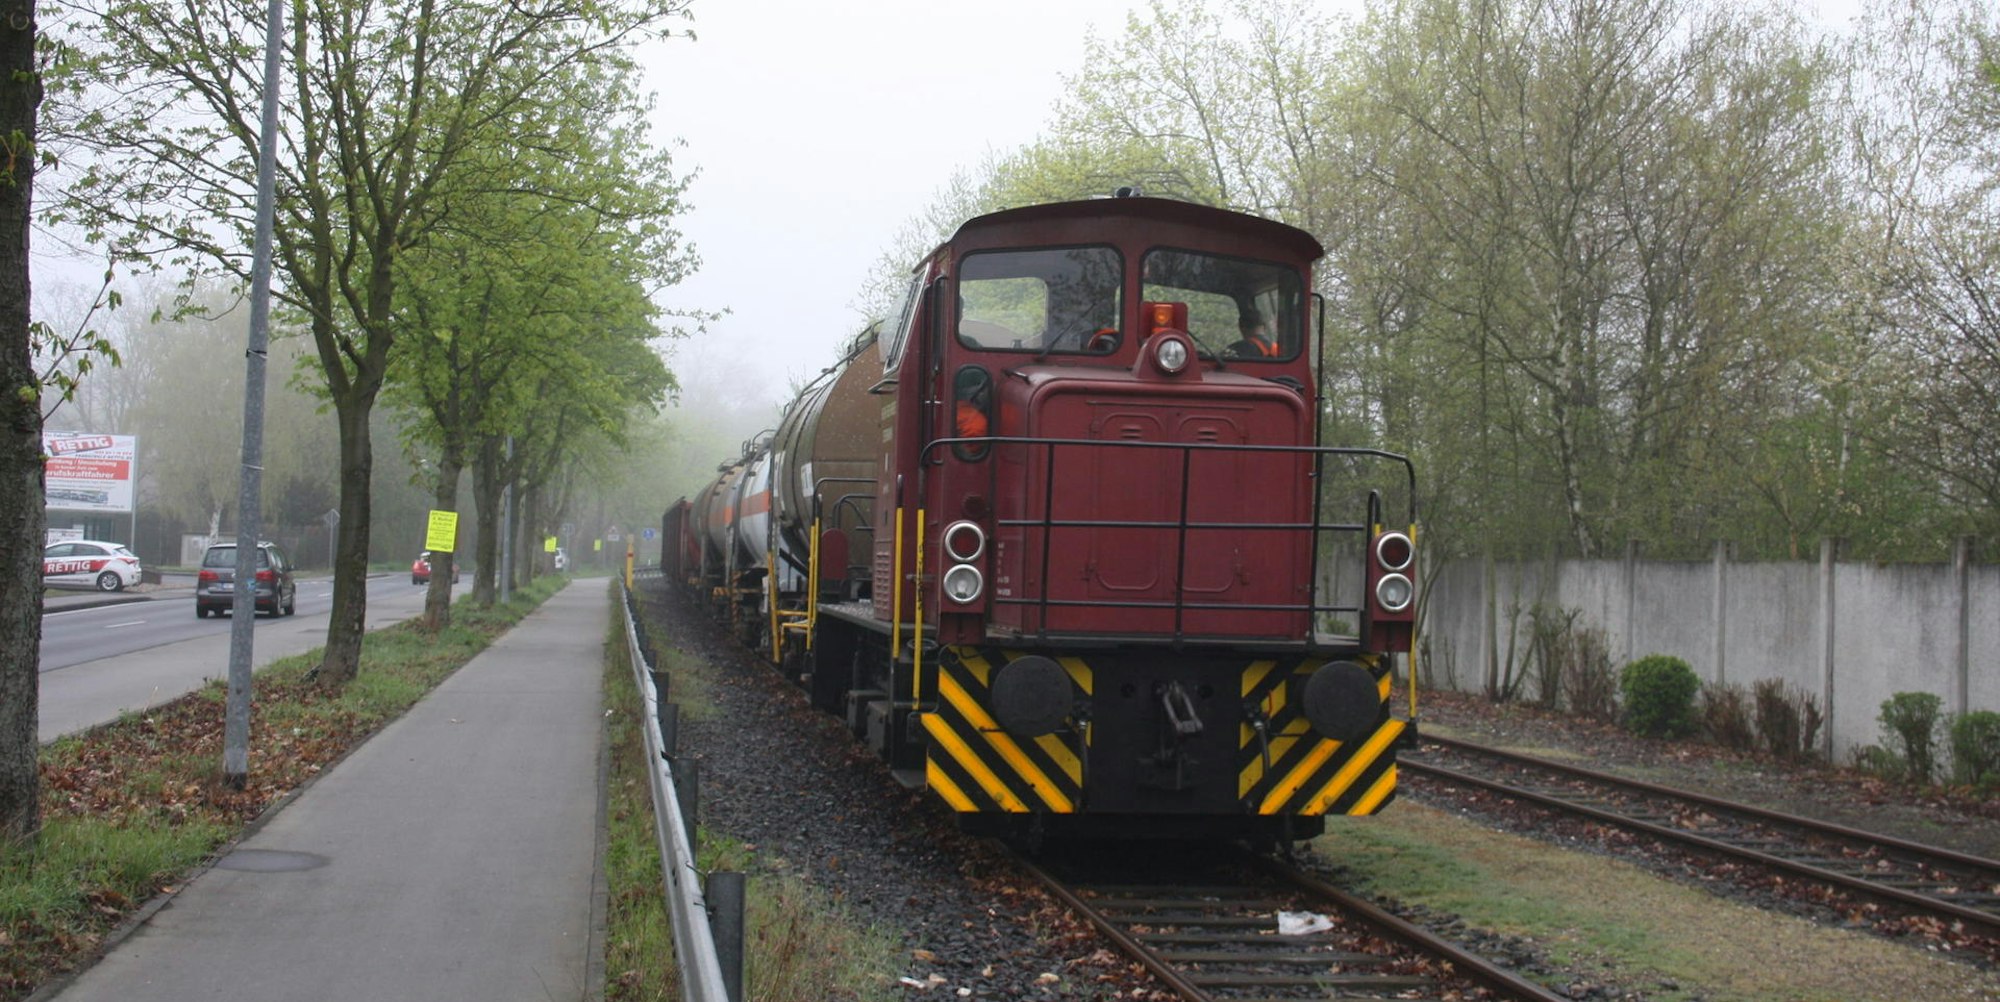 Über die Trasse der RSVG-Güterbahn soll künftig die neue rechtsrheinische Stadtbahnlinie rollen. Für die Güterzüge ist eine neue Trasse geplant, die Güteranschlussbahn Lülsdorf. (Archivbild)